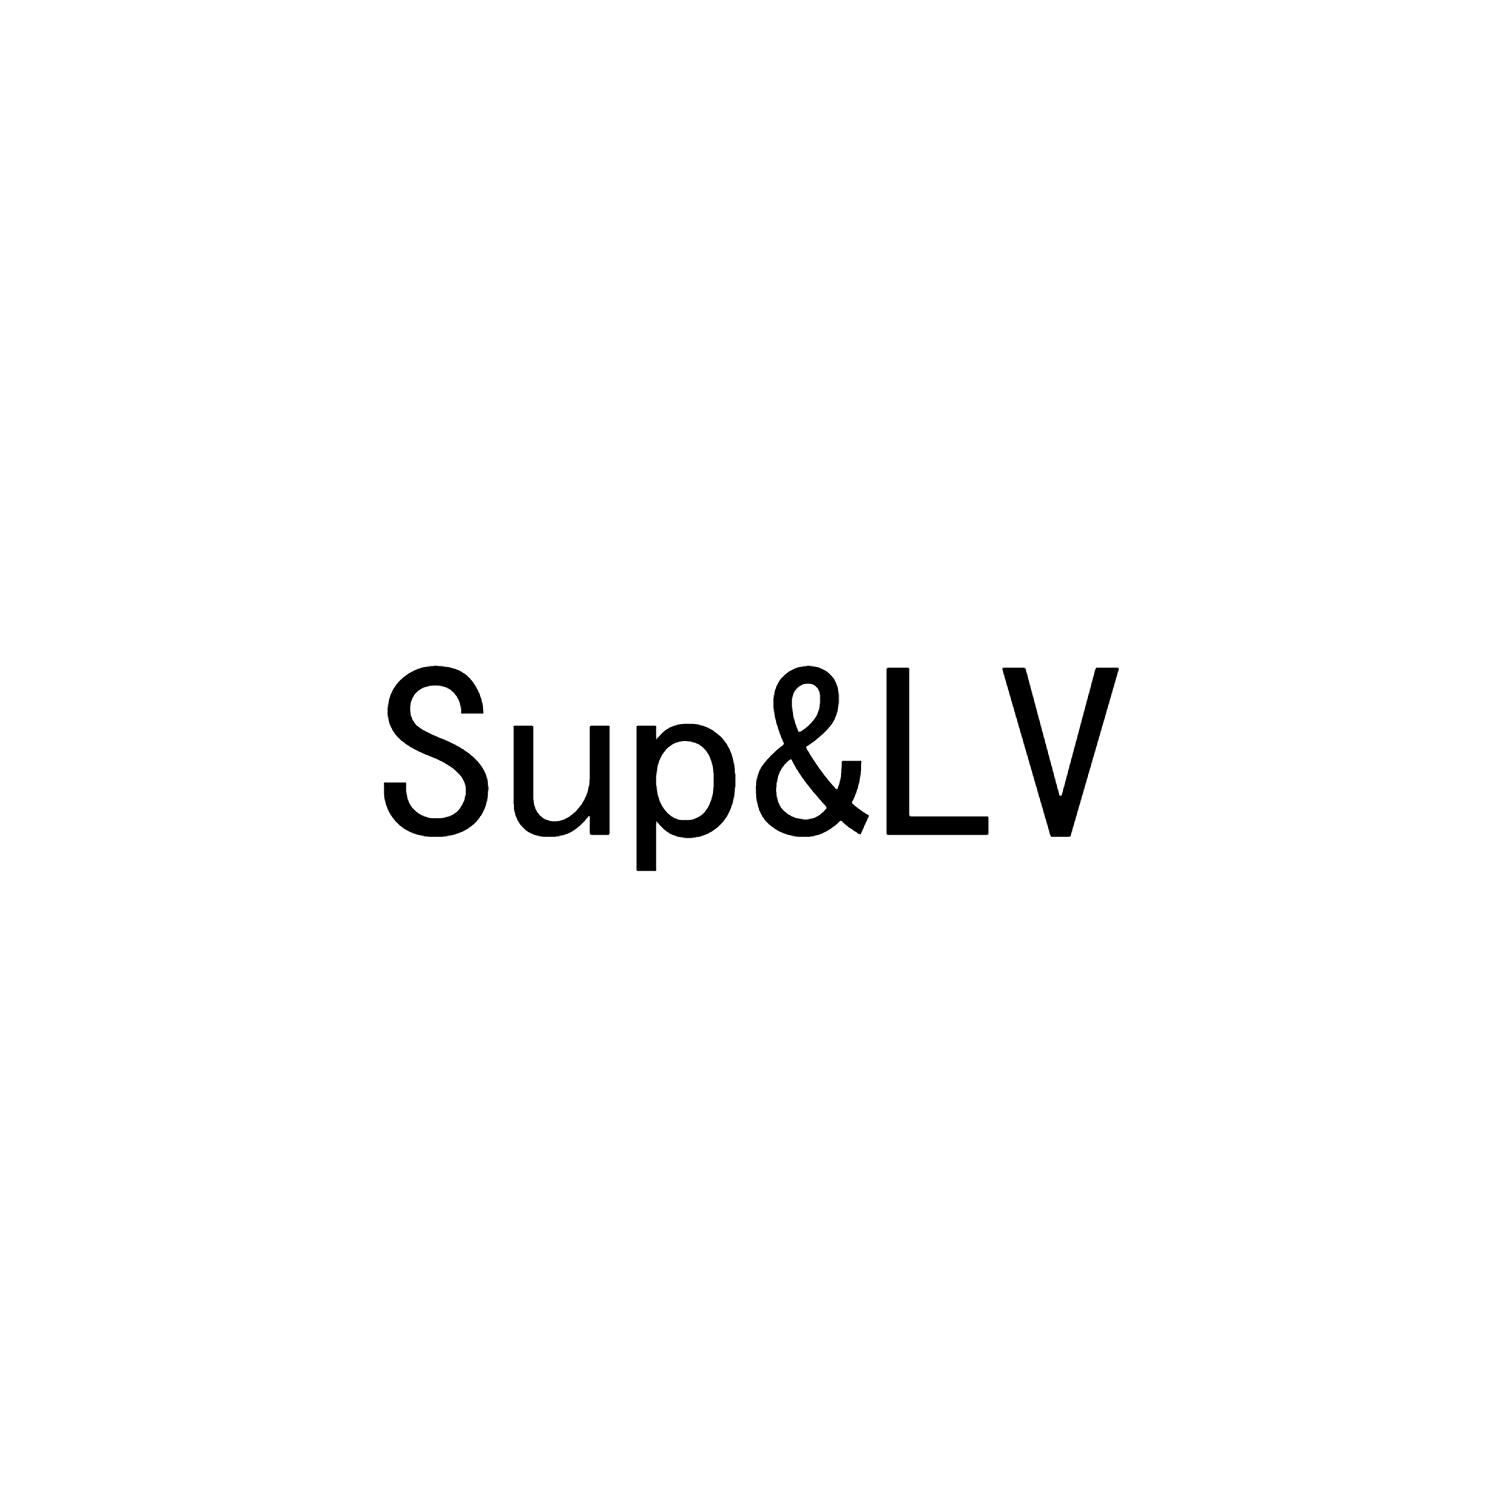 sup&lv 商标公告